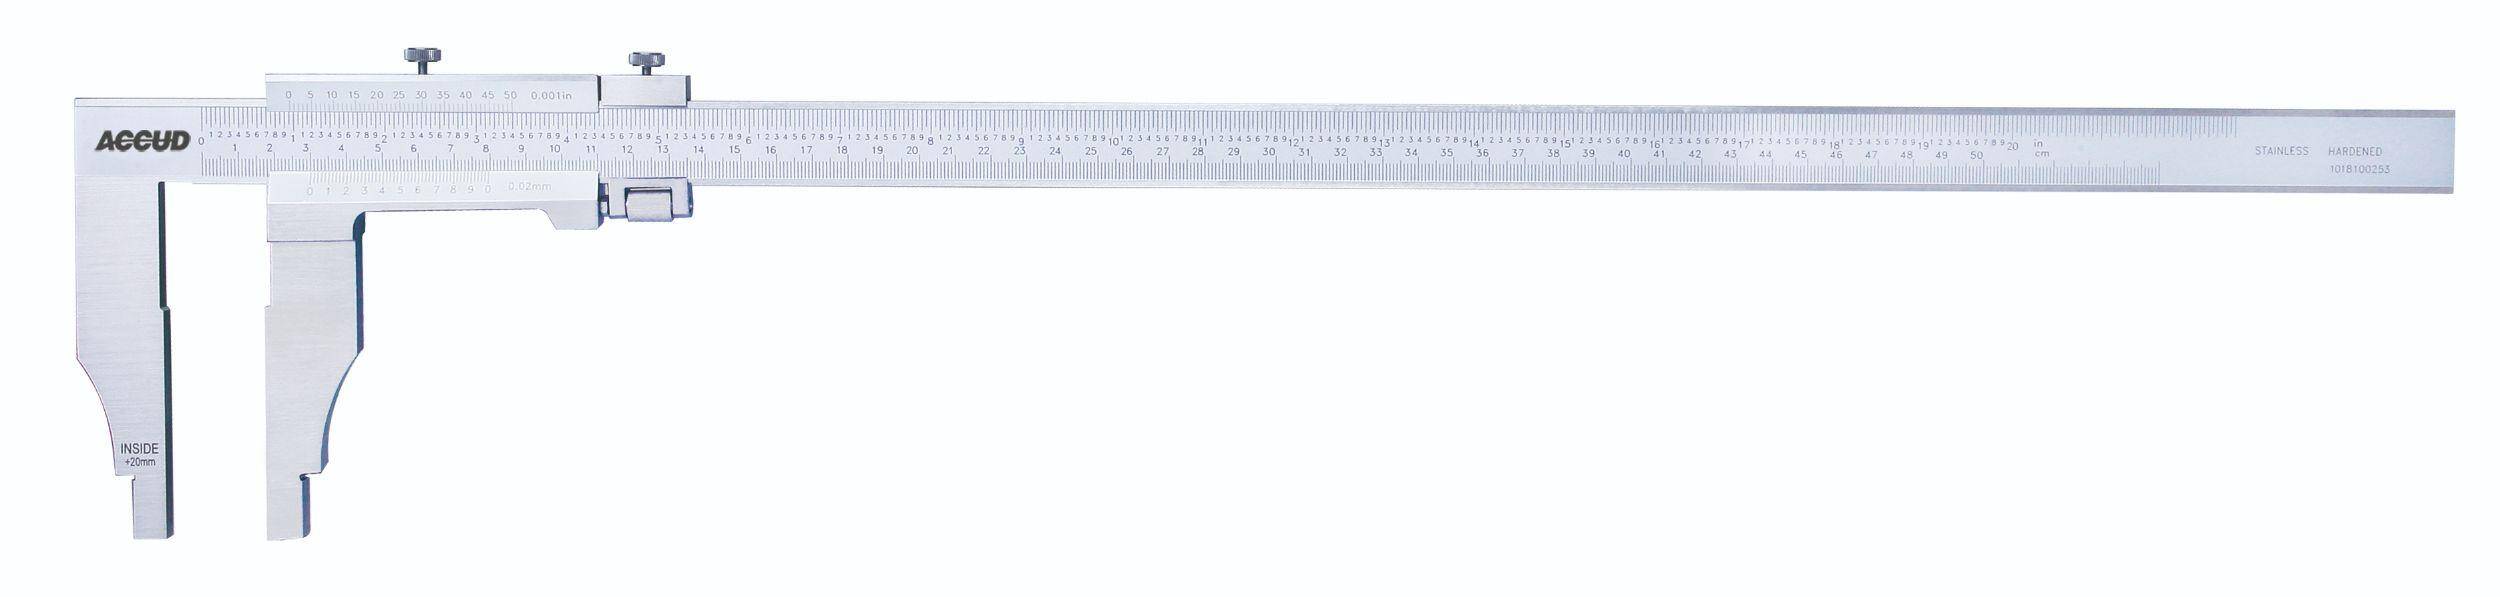 ACCUD suwmiarka analogowa 1000/0.02 mm jednostronna długość szczęk 150 mm 128-040-21